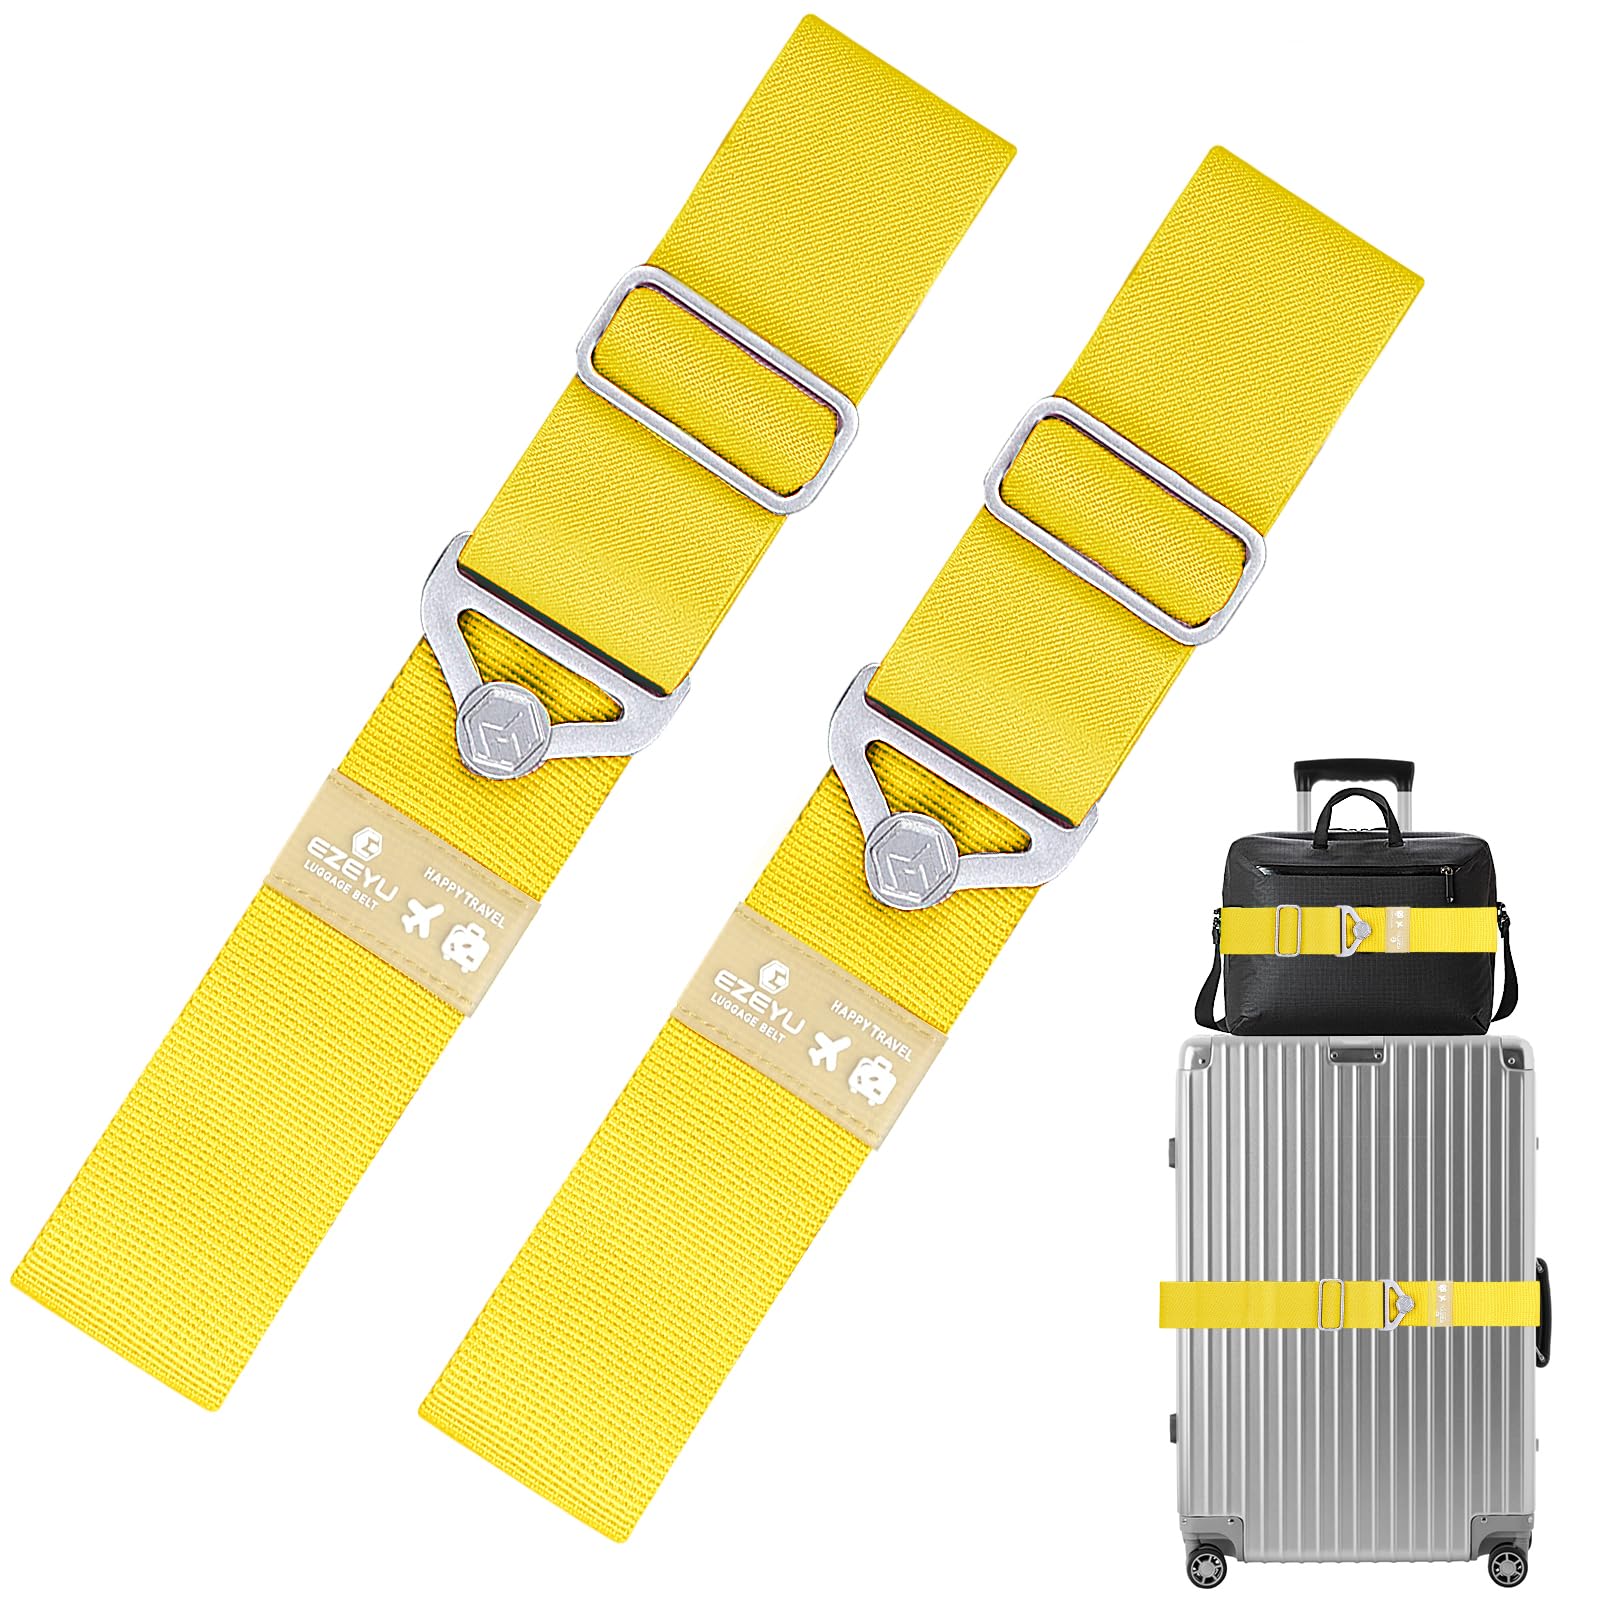 2 Stück Elastisch Koffergurt Set, Einstellbar Kofferband Gurt, Gelb 2-in-1-Reisegürtel für Gepäck Koffergurte Personalisierte Identifikation Verstellbare Rutschfestes Reisezube von Grantop